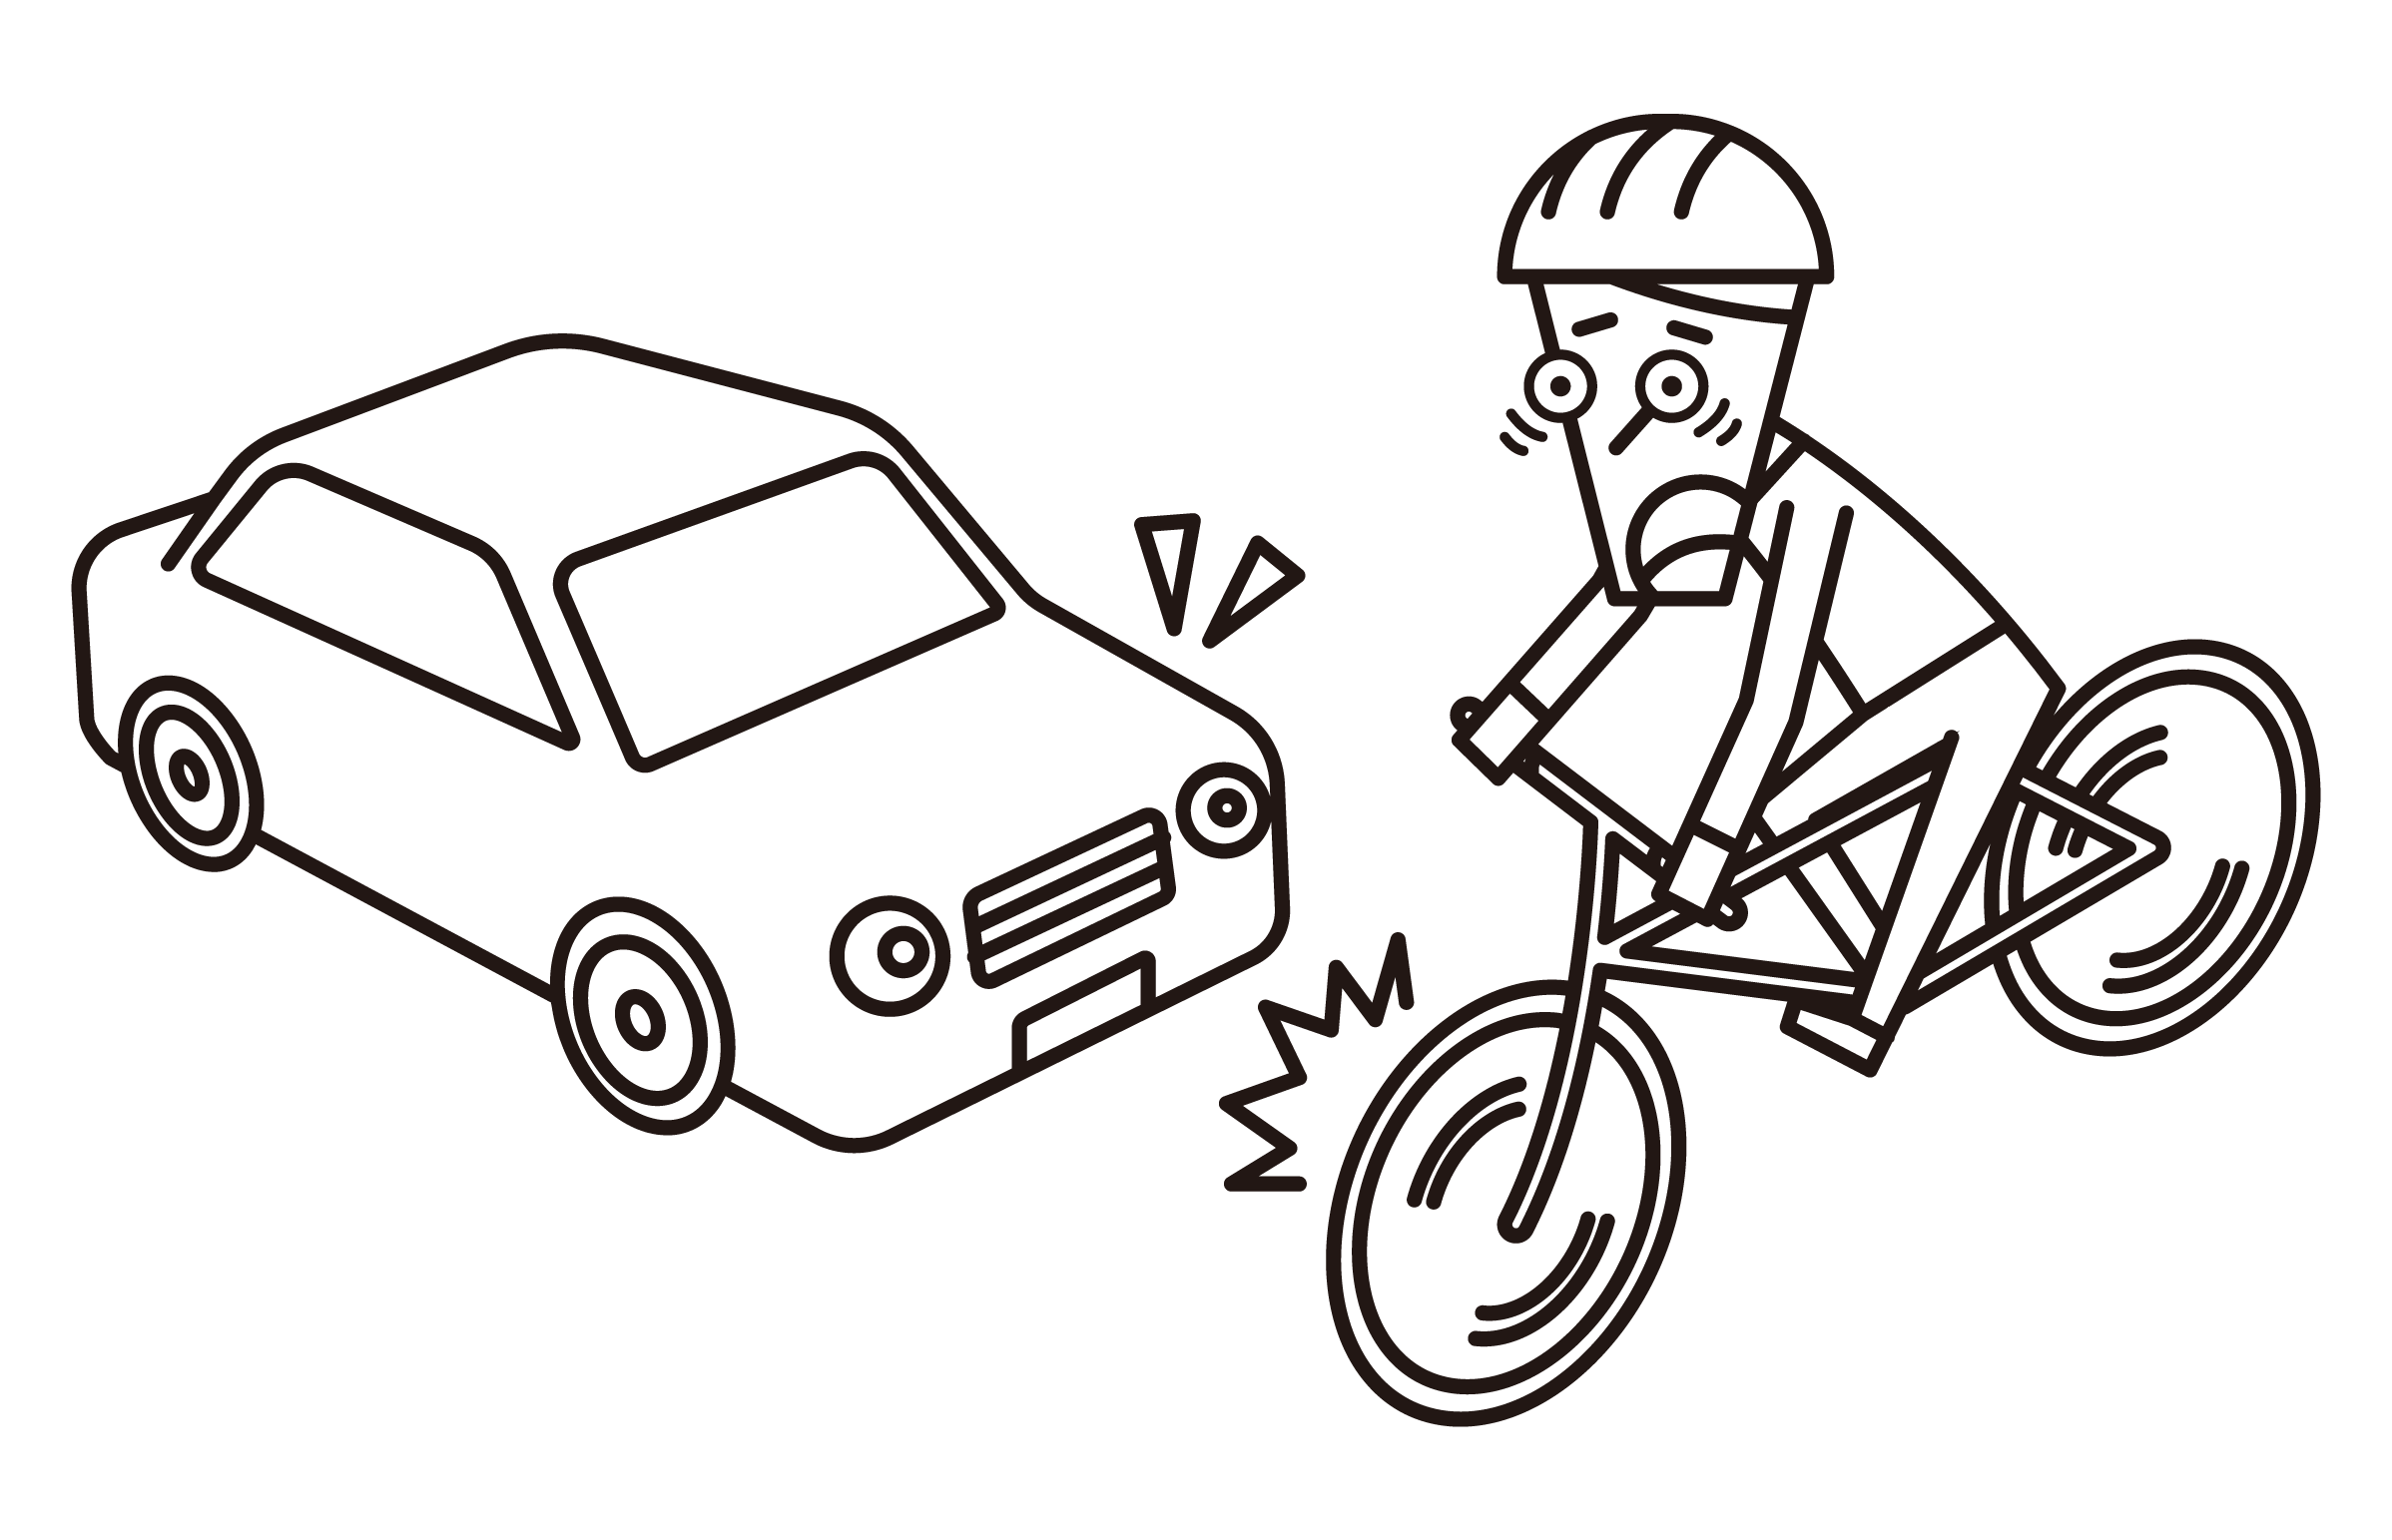 騎自行車的人（男性）的插圖，他們可能與汽車碰撞